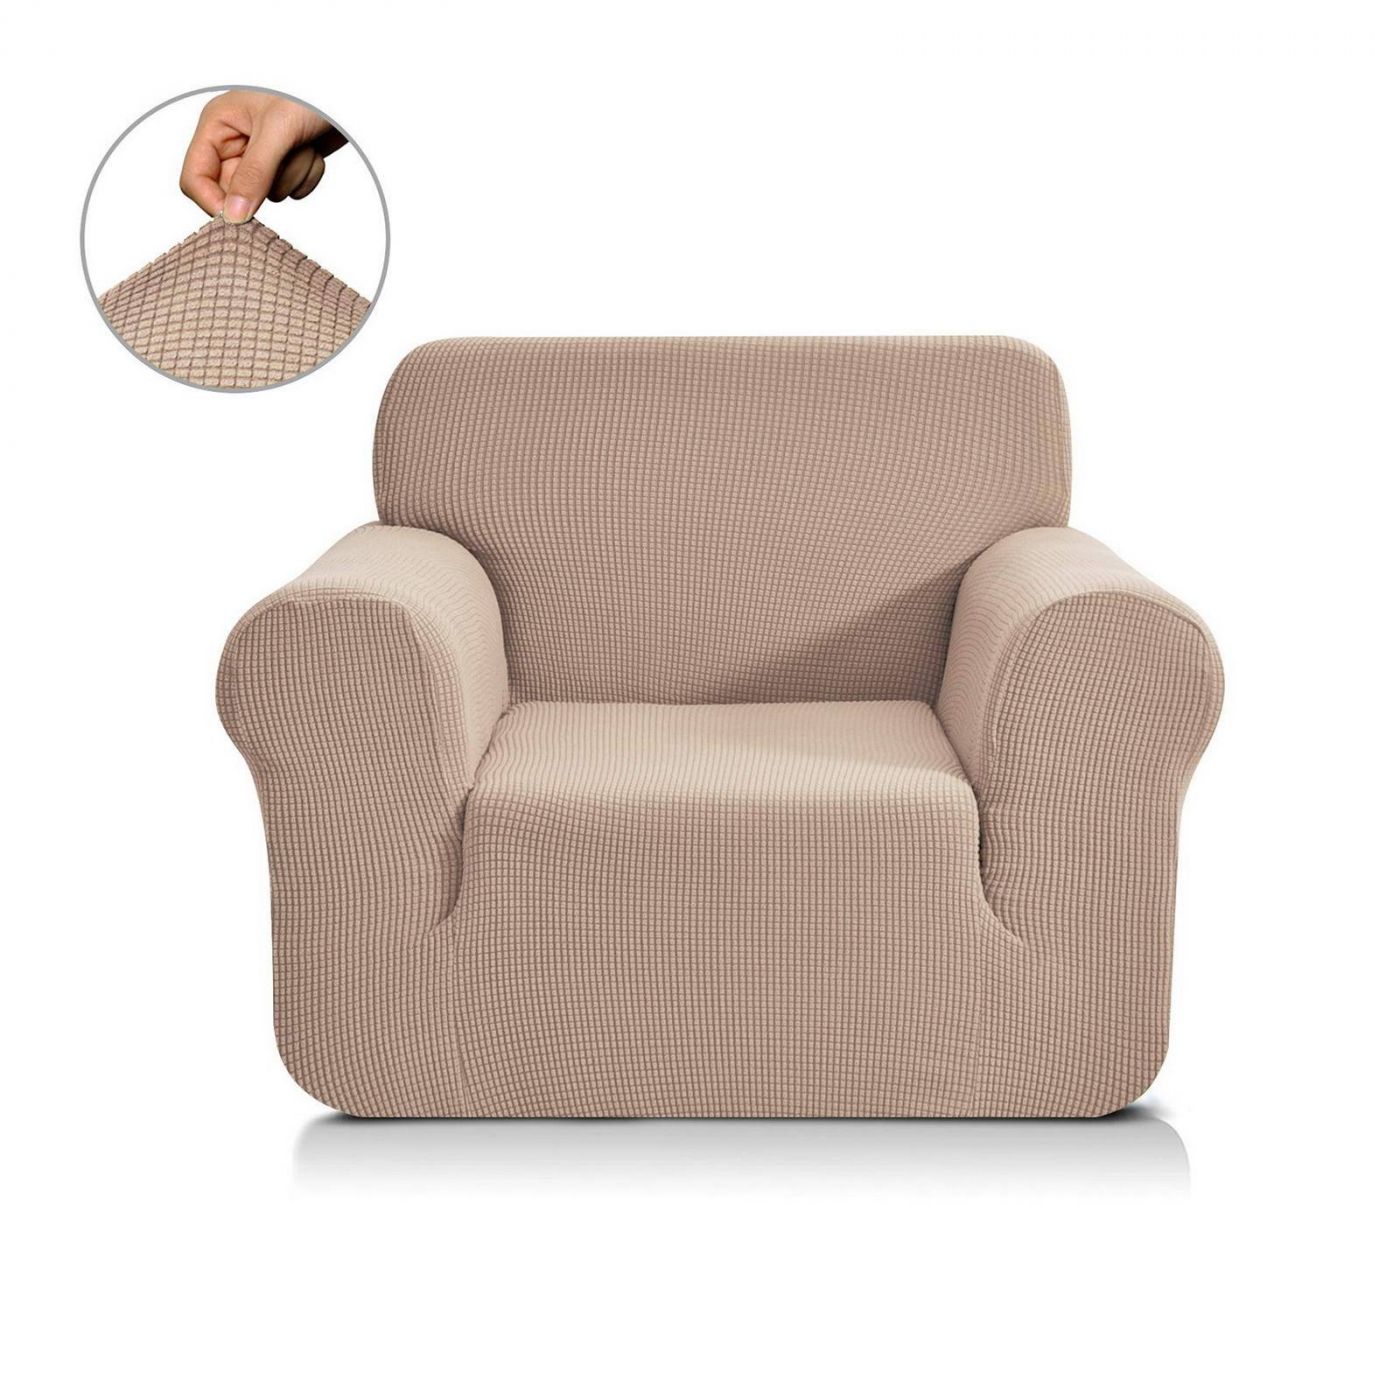 Чехол для кресла Моника цвет: бежевый (Одноместный), размер Без наволочек sofi881462 Чехол для кресла Моника цвет: бежевый (Одноместный) - фото 1